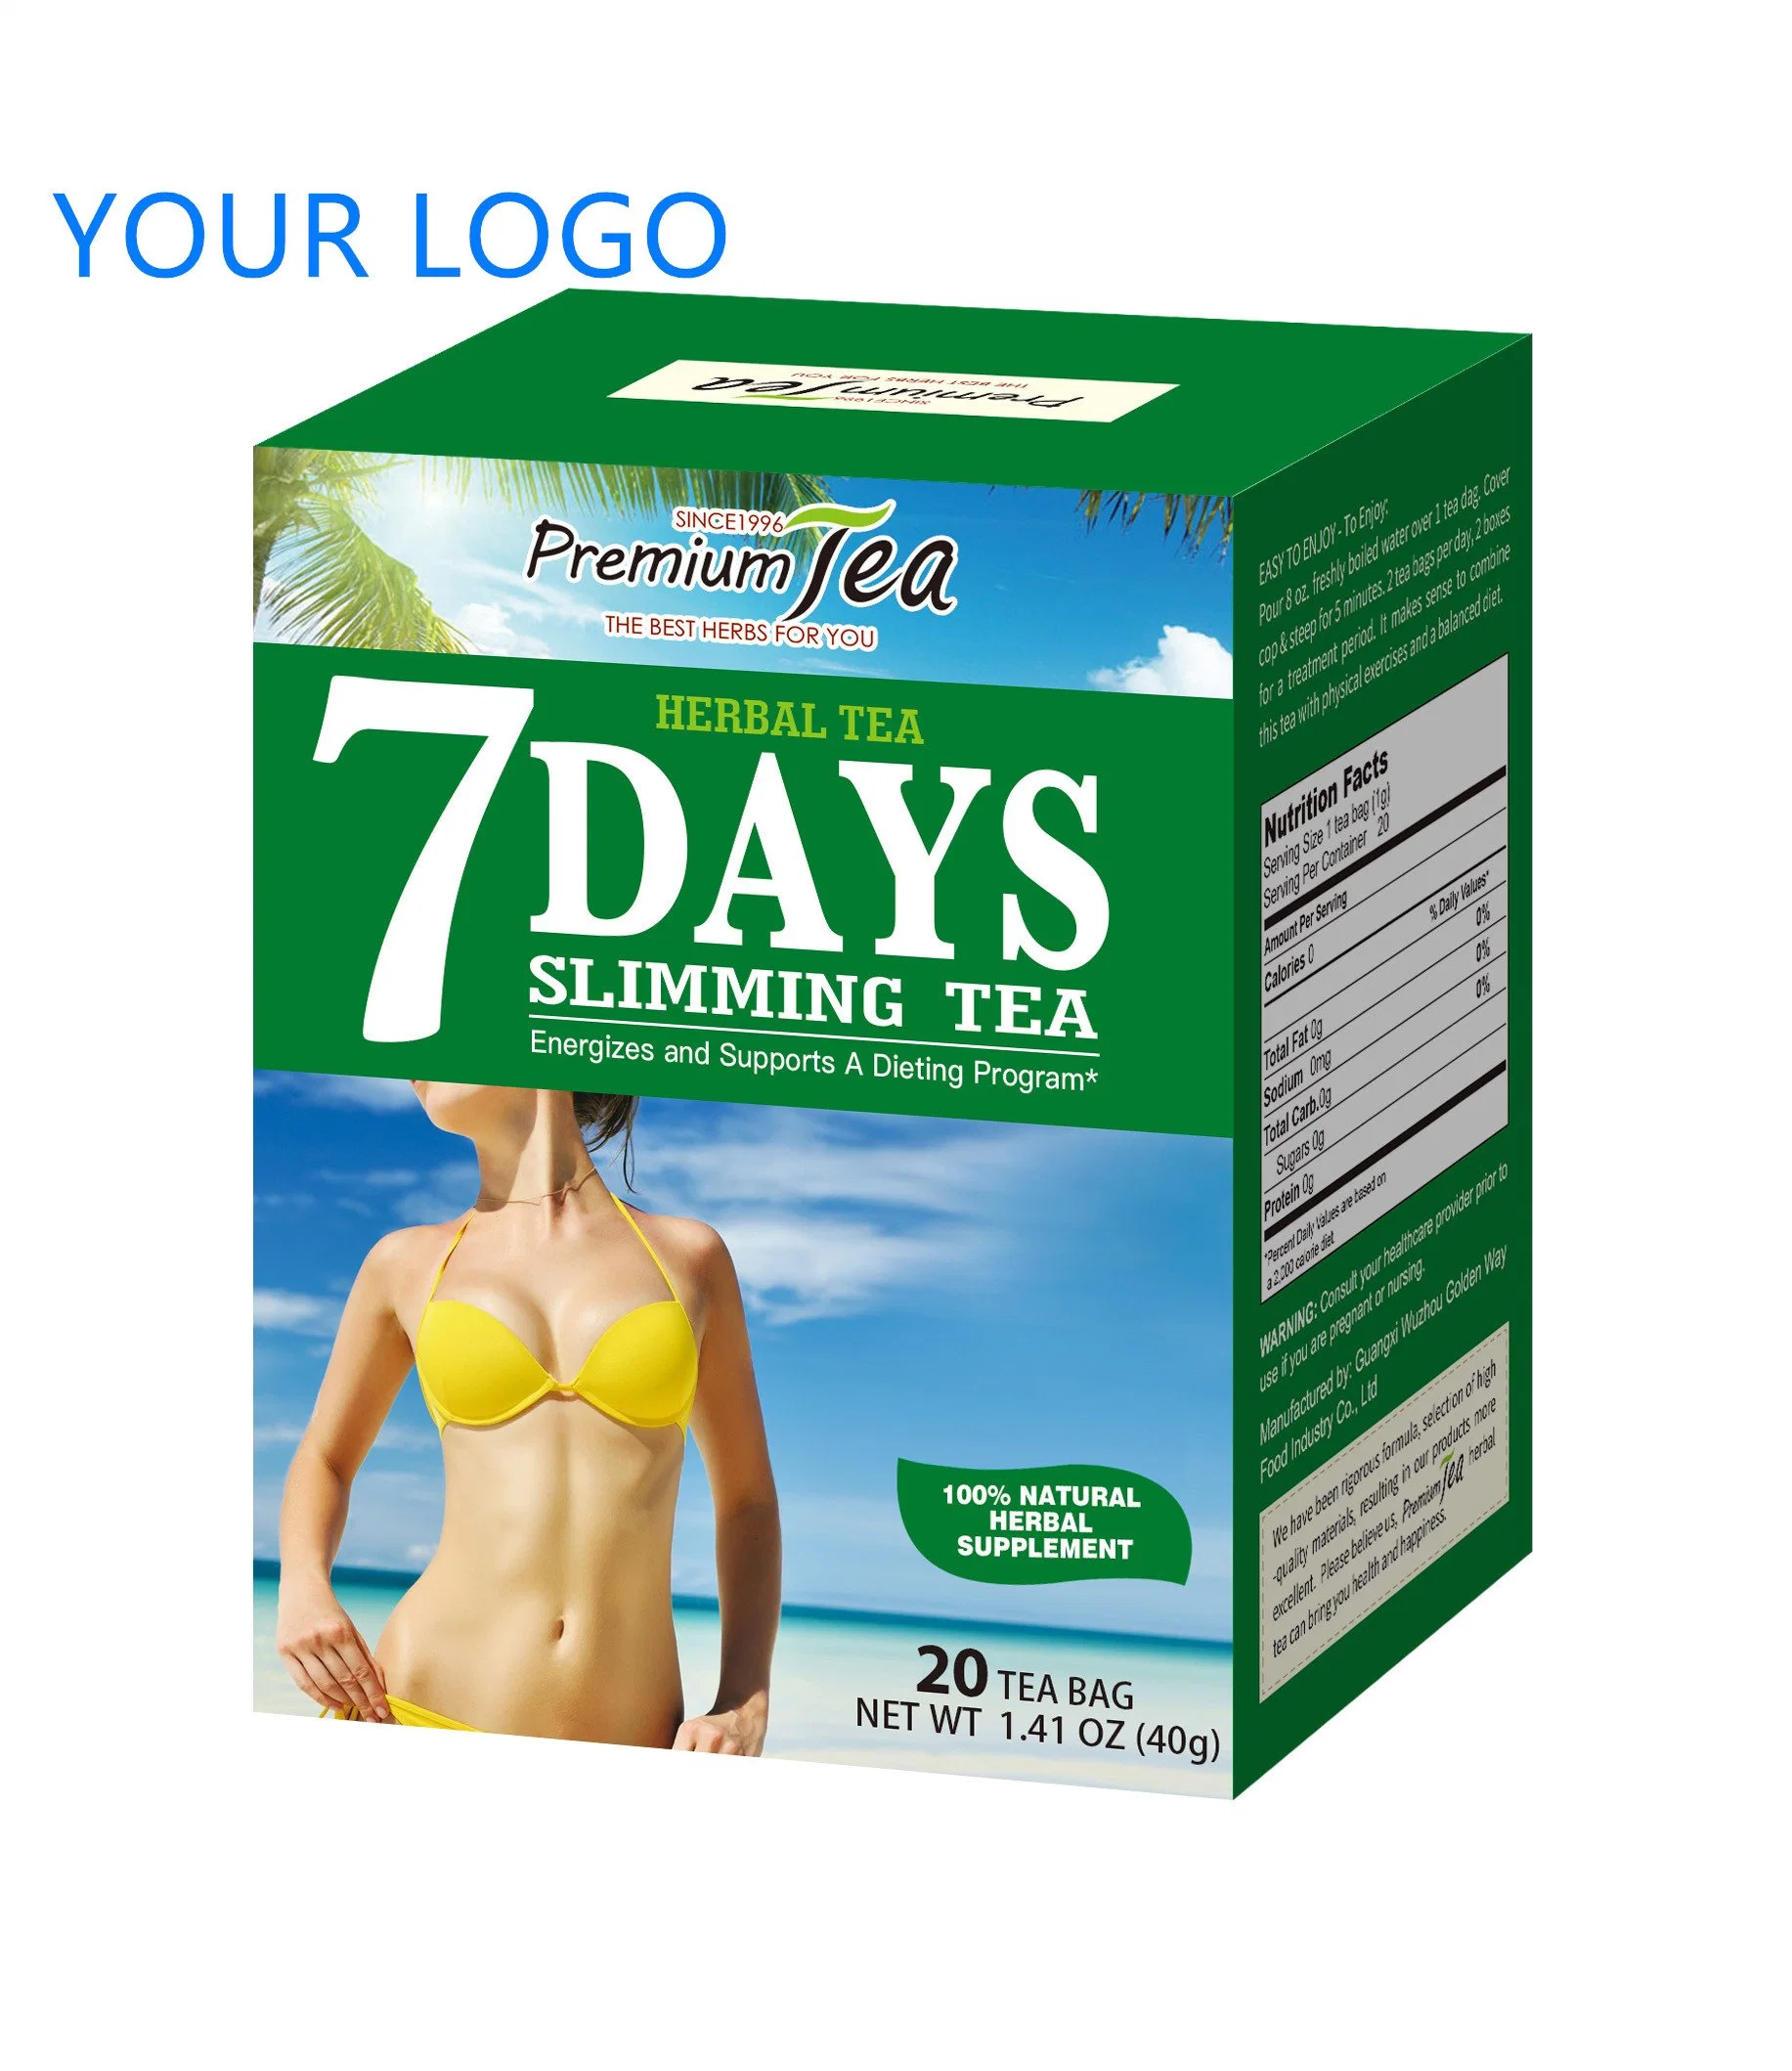 تخصيص 7 أيام لتخفيف الوزن بالأعشاب شاي ليمينغ